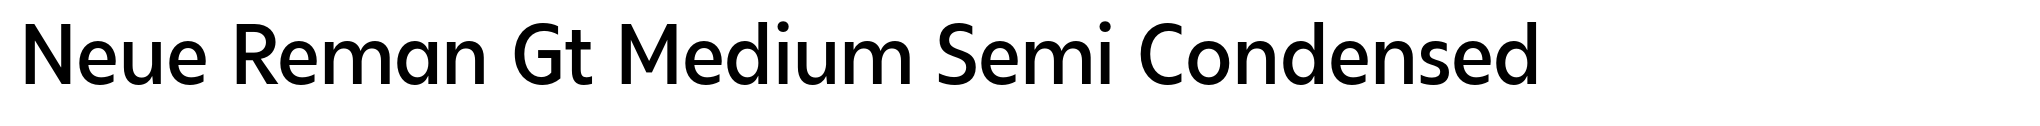 Neue Reman Gt Medium Semi Condensed image